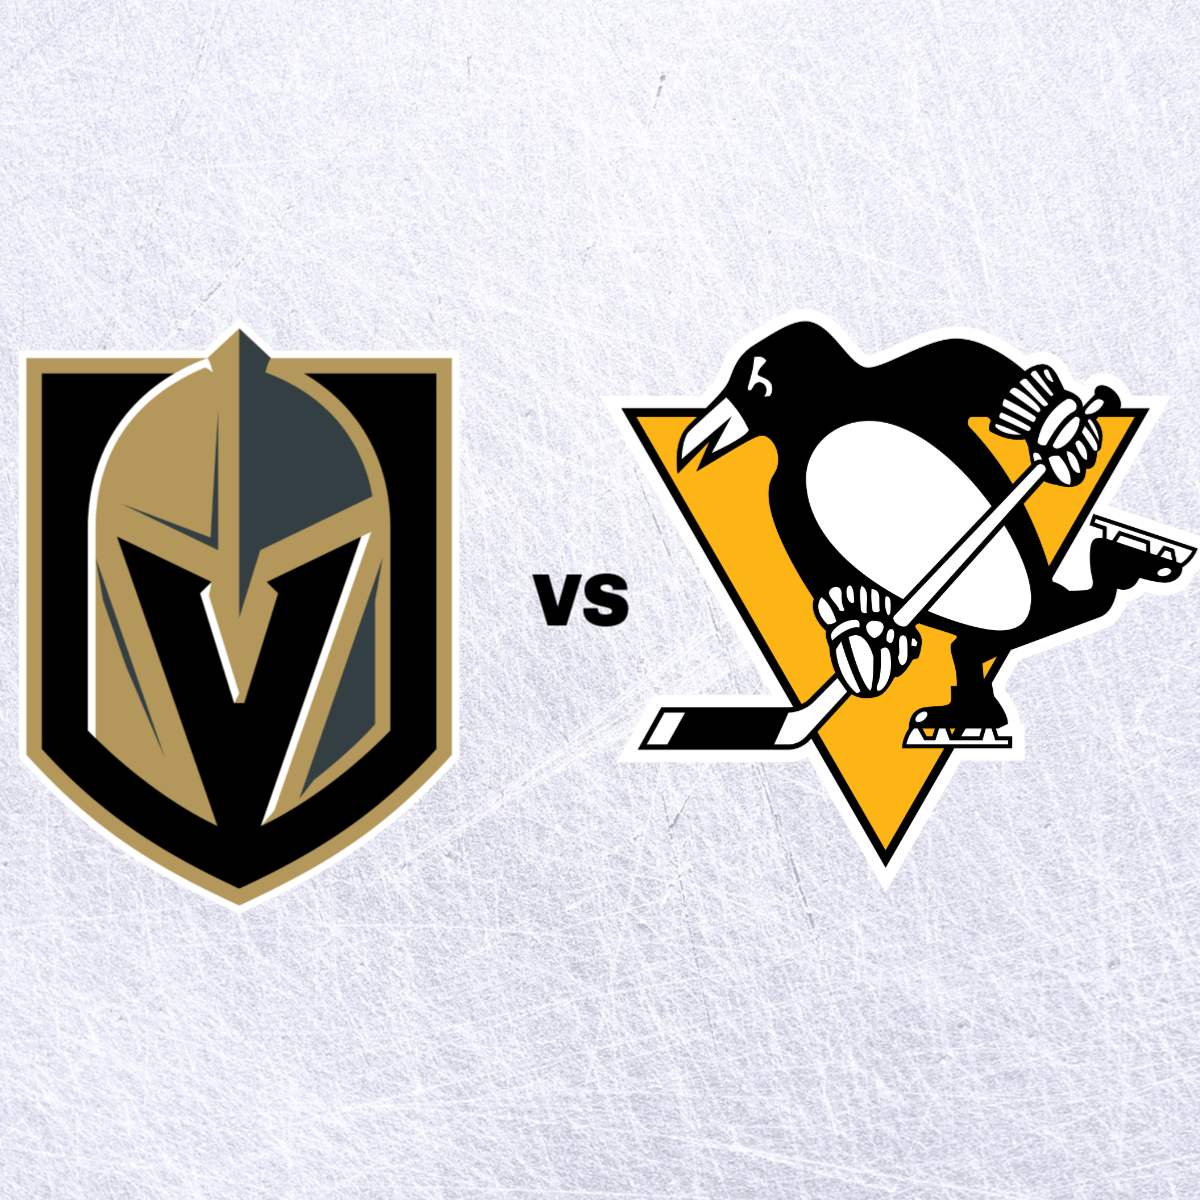 Vegas Golden Knights vs Penguins